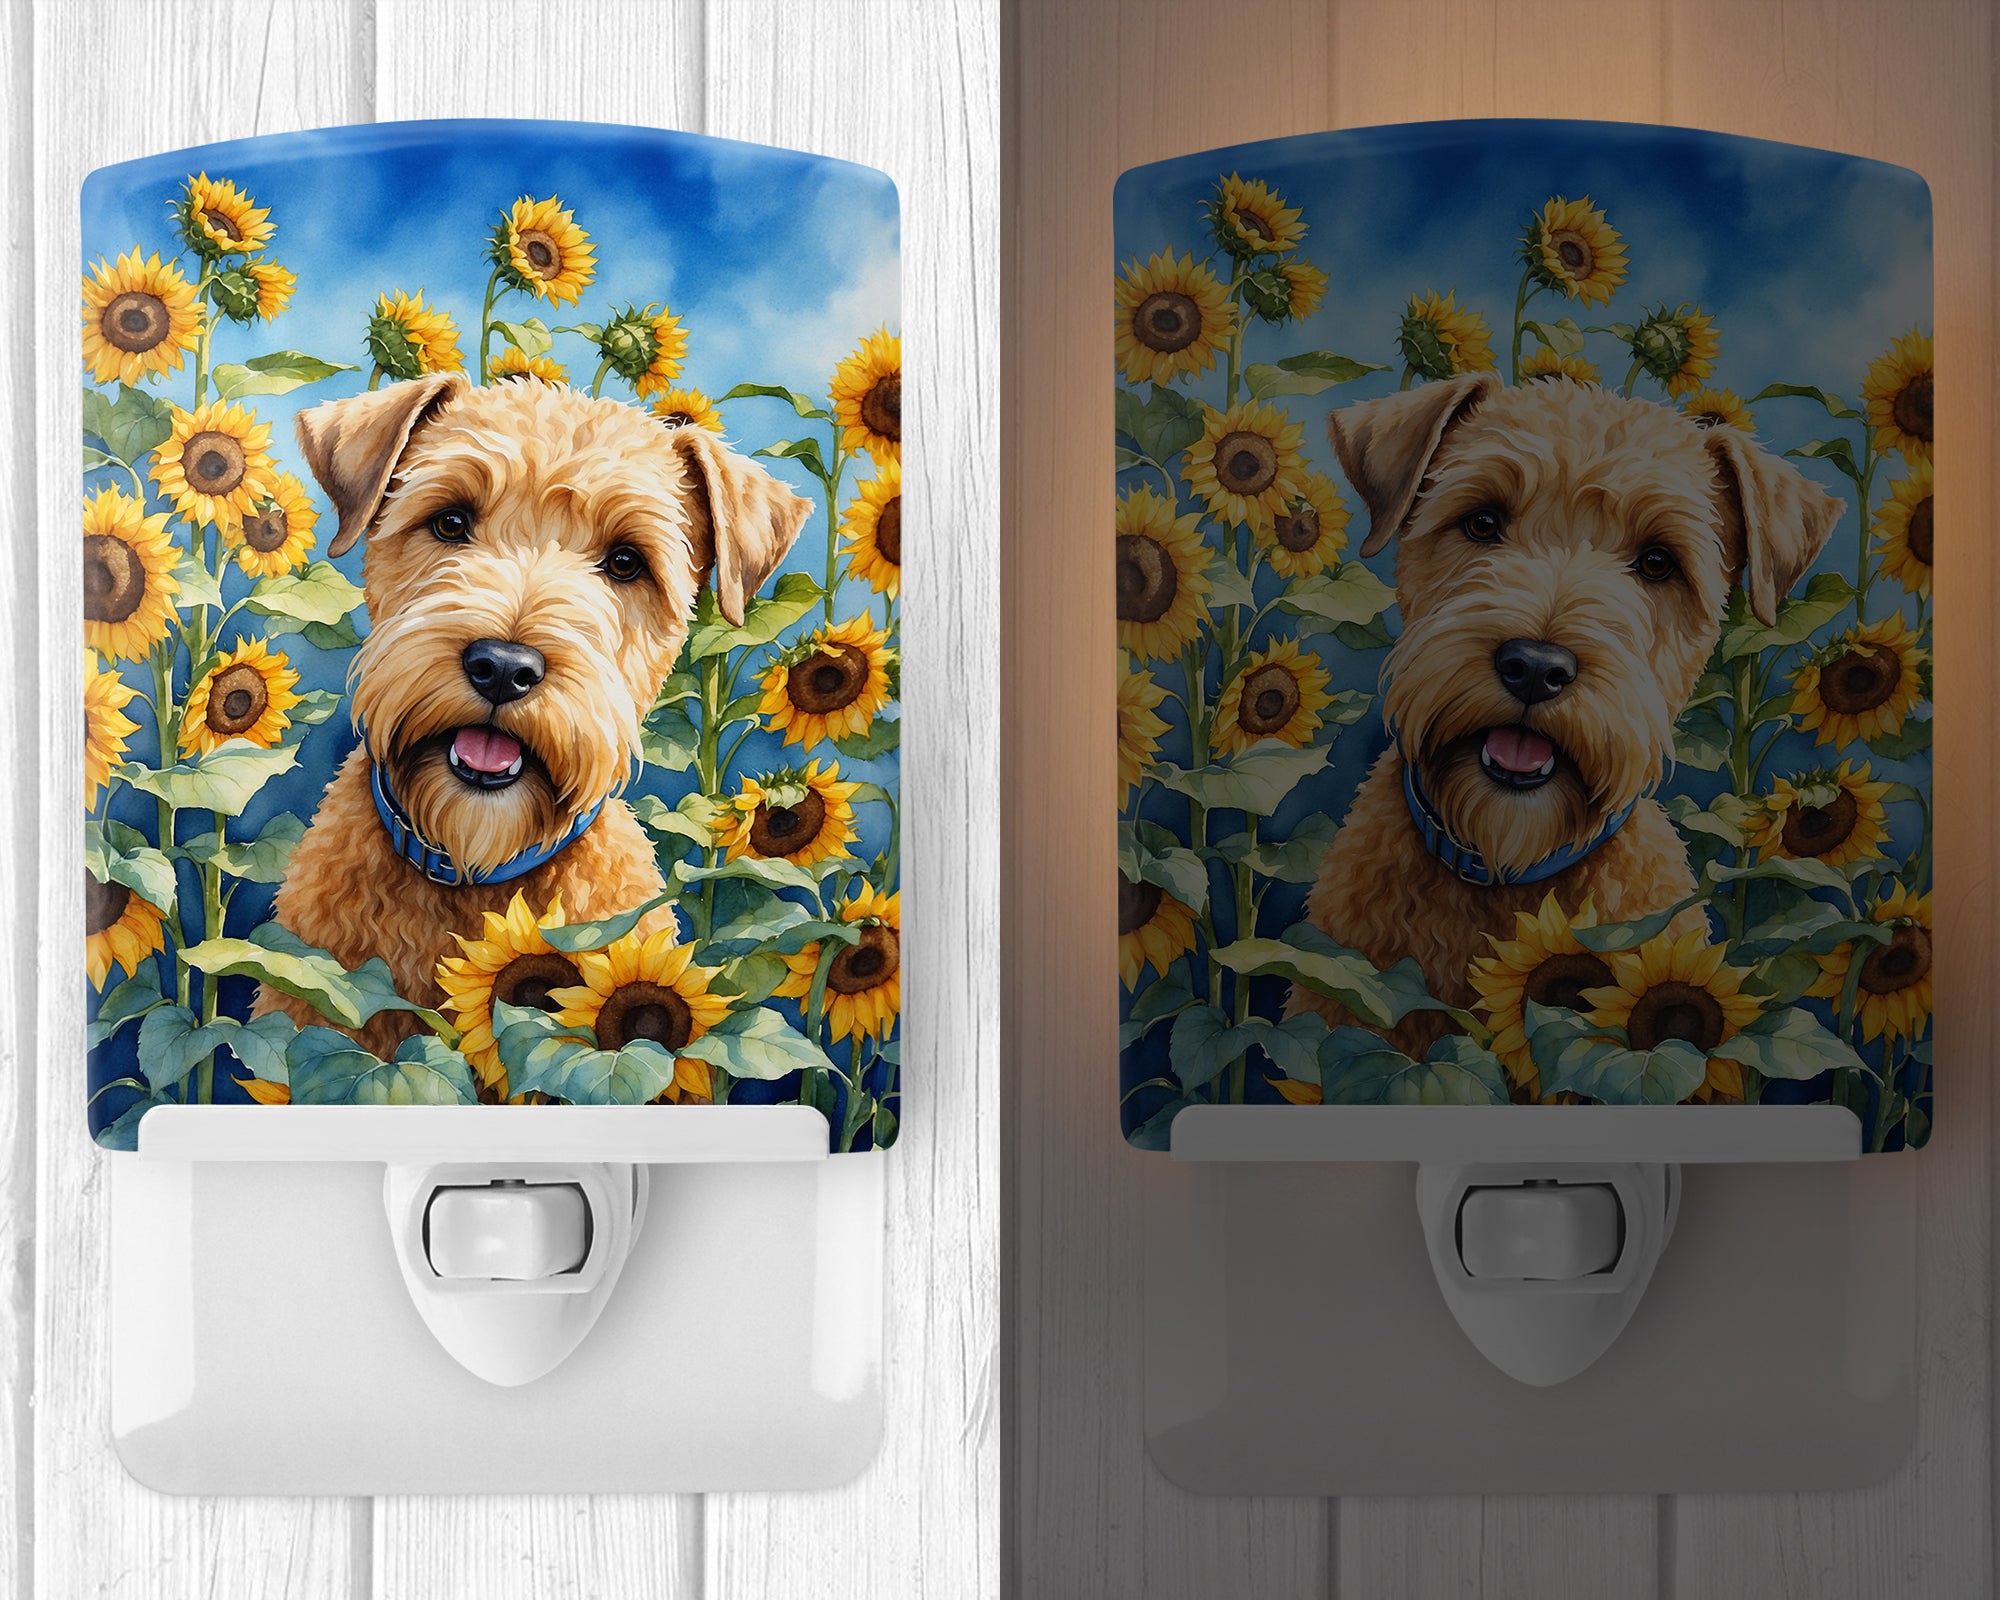 Buy this Wheaten Terrier in Sunflowers Ceramic Night Light